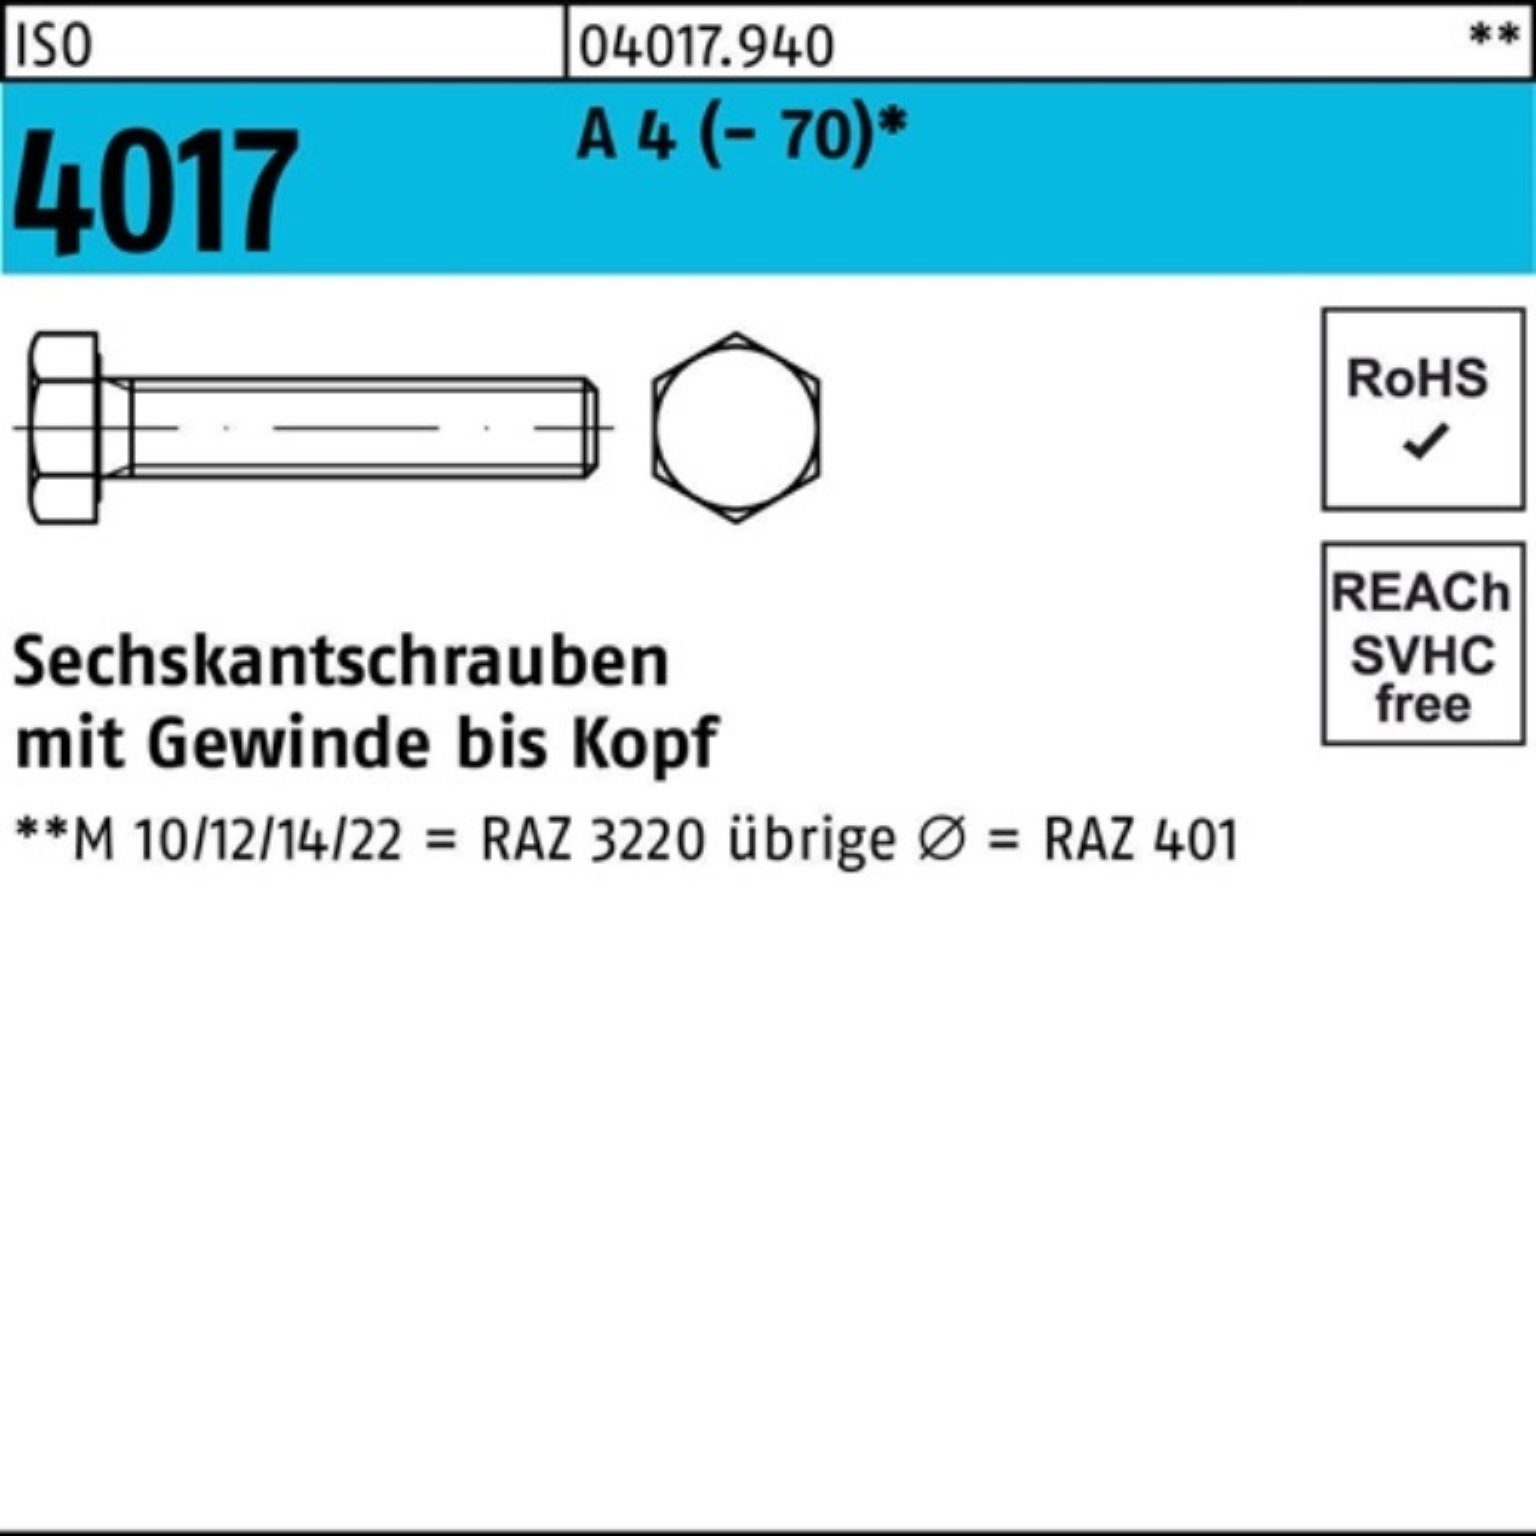 Bufab Sechskantschraube 100er Pack Sechskantschraube ISO 4017 VG M12x 16 A 4 (70) 100 Stück | Schrauben